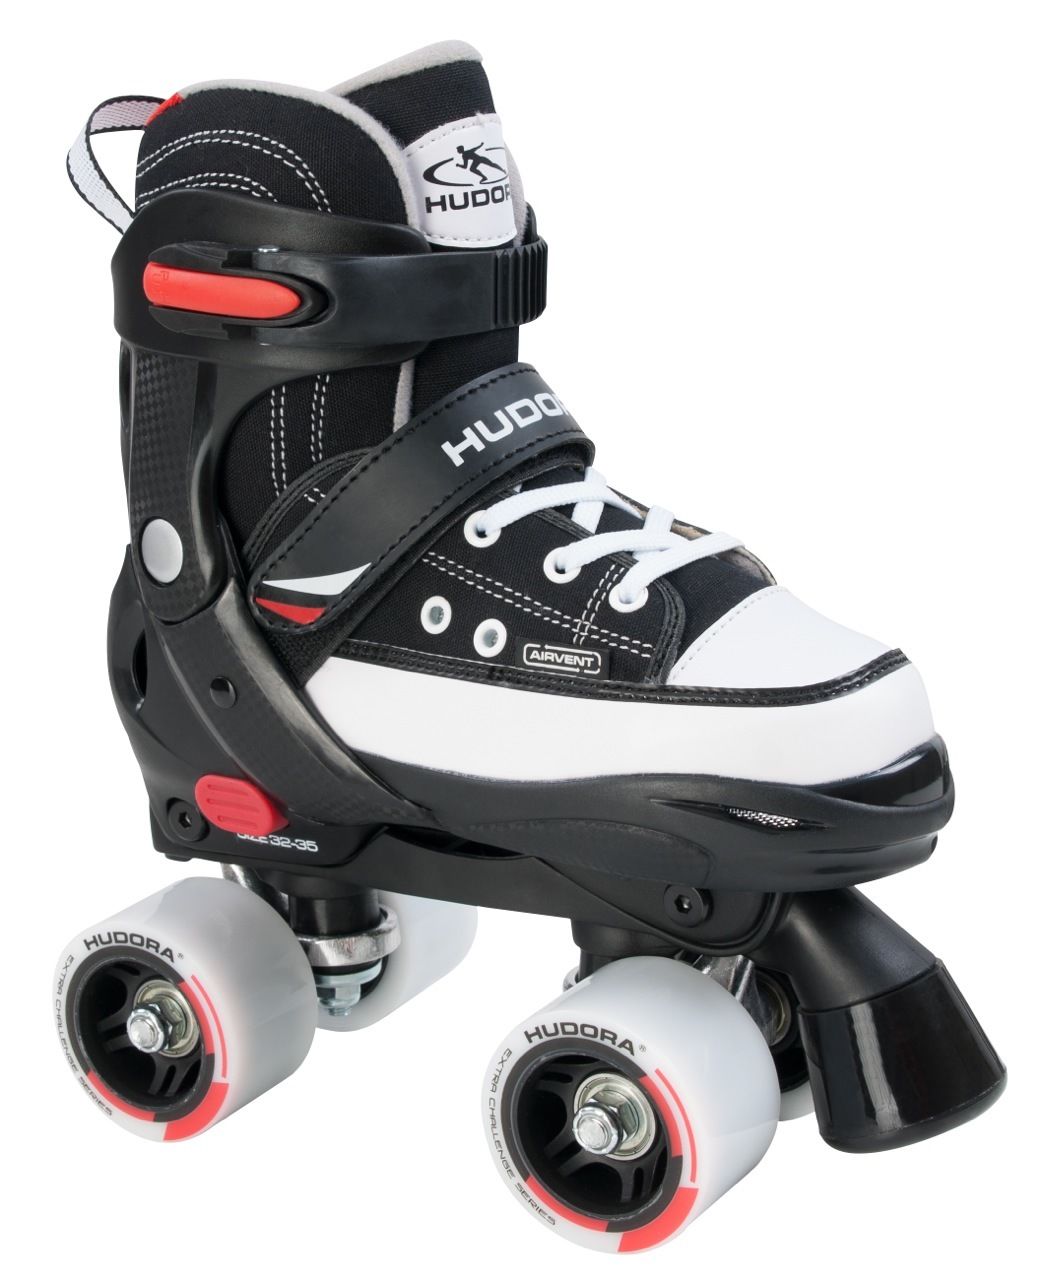 Ролики HUDORA Roller Skate разм. 36-39 черные roller skate leash ice skates strap skating shoes buckle strap clasp strap for roller skates